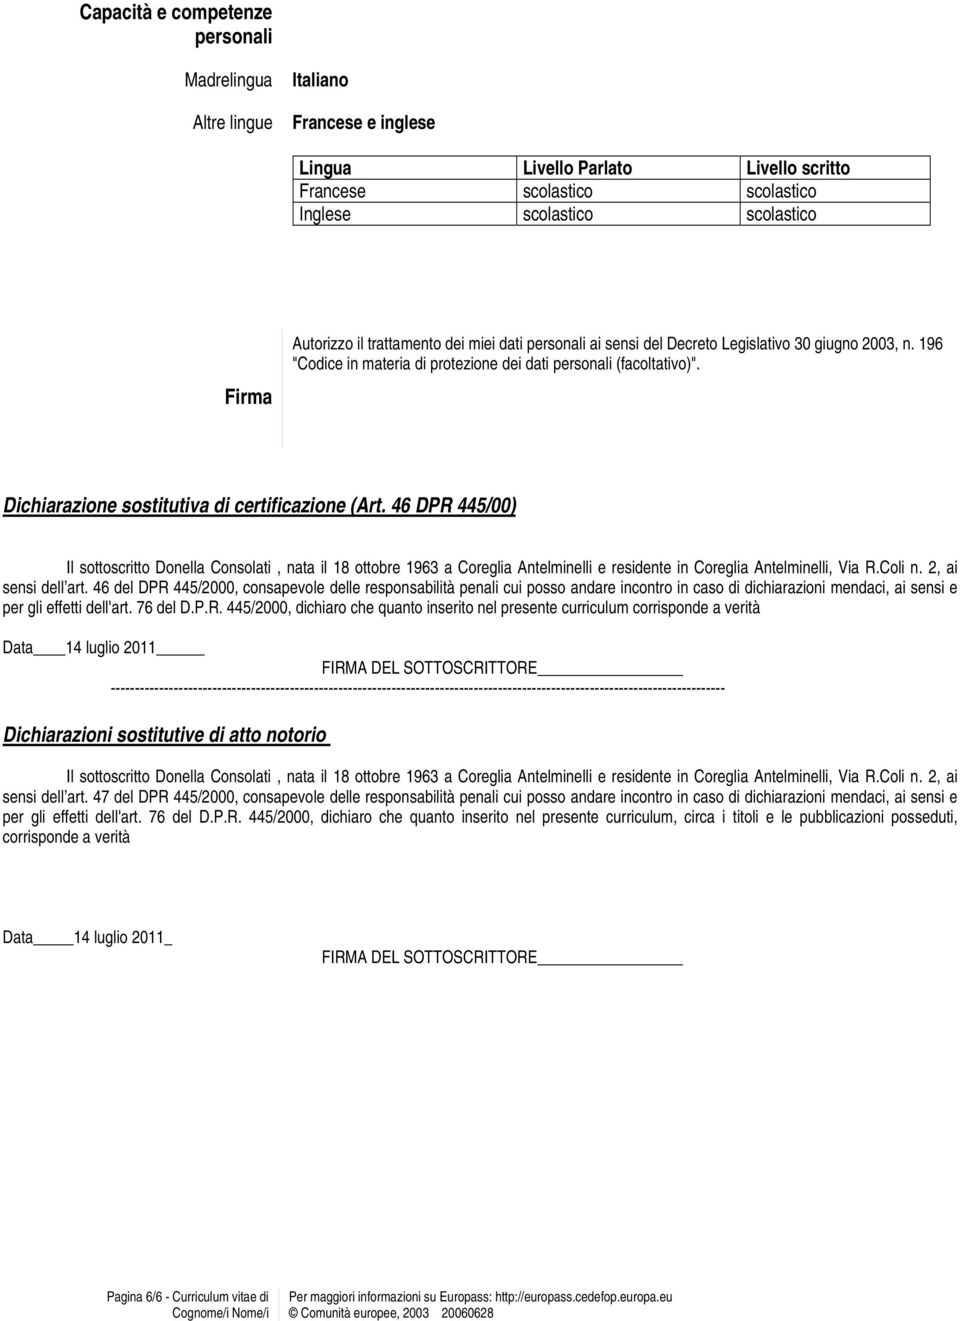 Dichiarazione sostitutiva di certificazione (Art. 46 DPR 445/00) Il sottoscritto Donella Consolati, nata il 18 ottobre 1963 a Coreglia Antelminelli e residente in Coreglia Antelminelli, Via R.Coli n.